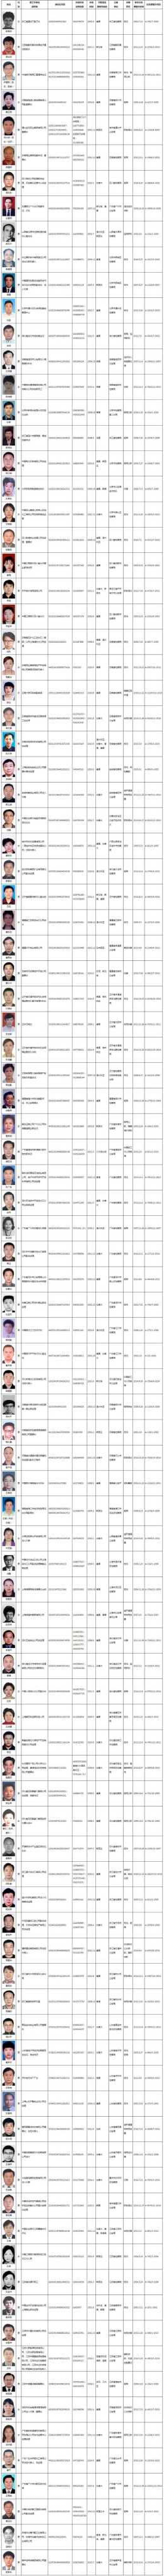 中国红色通缉令缉拿百名外逃人员